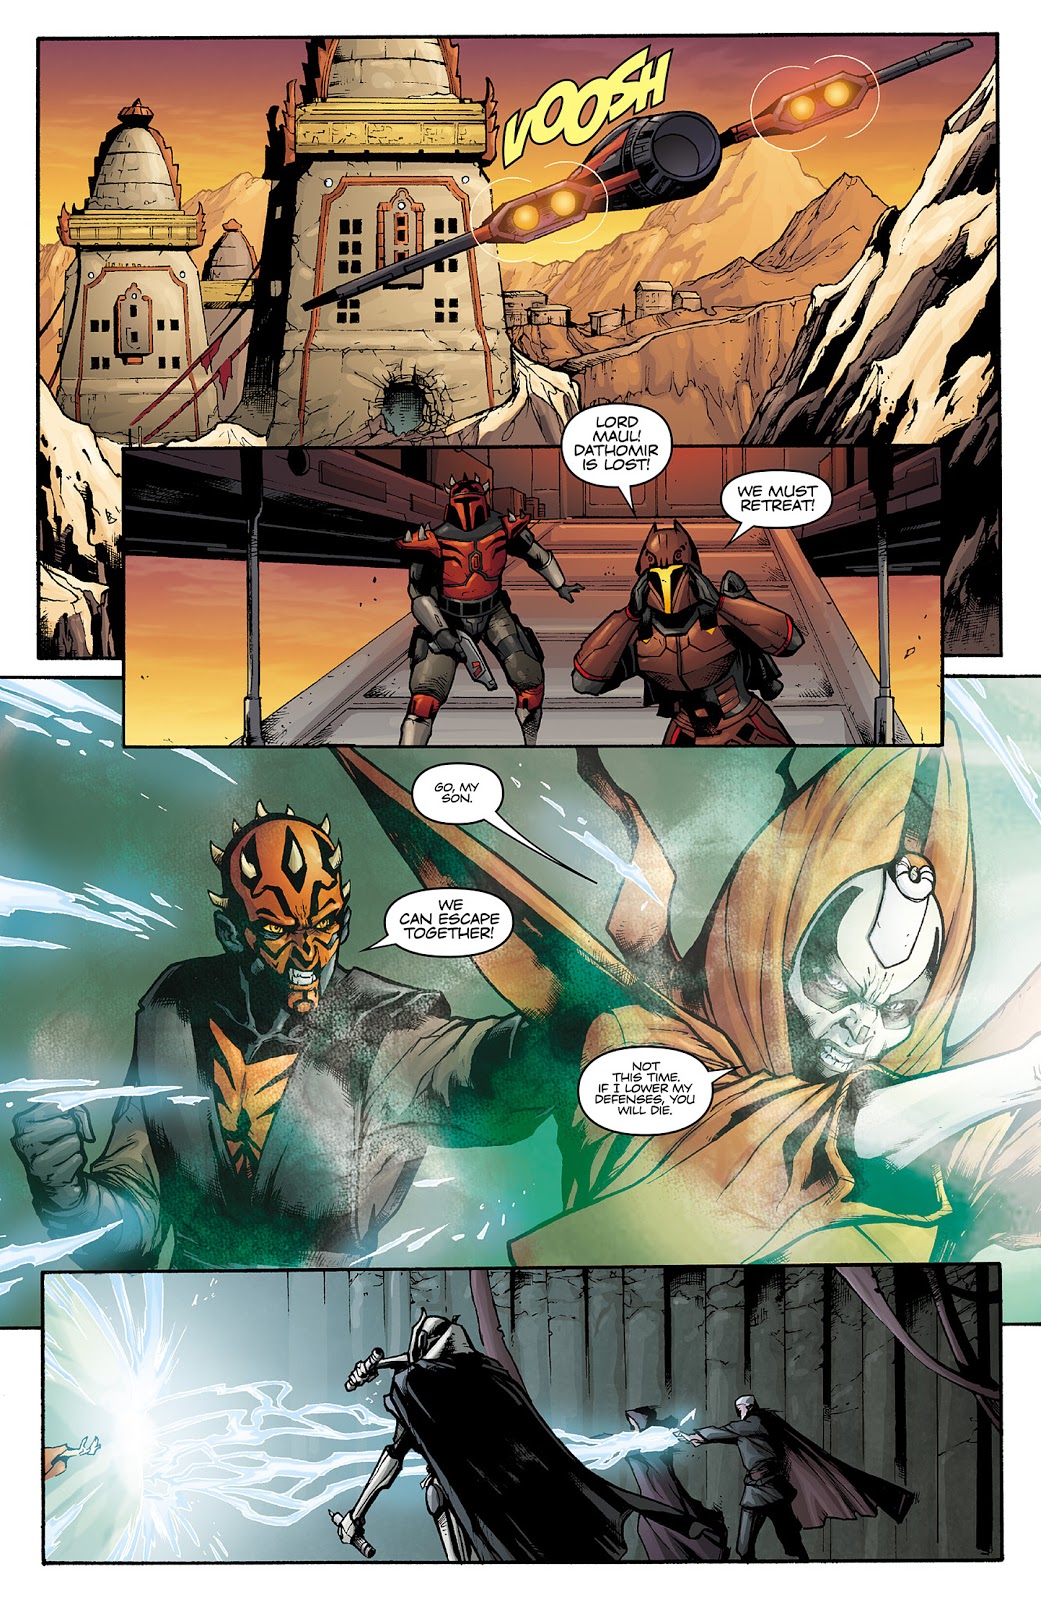 SS - Starkiller (ArkhamAsylum3) vs Qui-Gon Jinn (Meatpants) - Page 2 Sidiou22